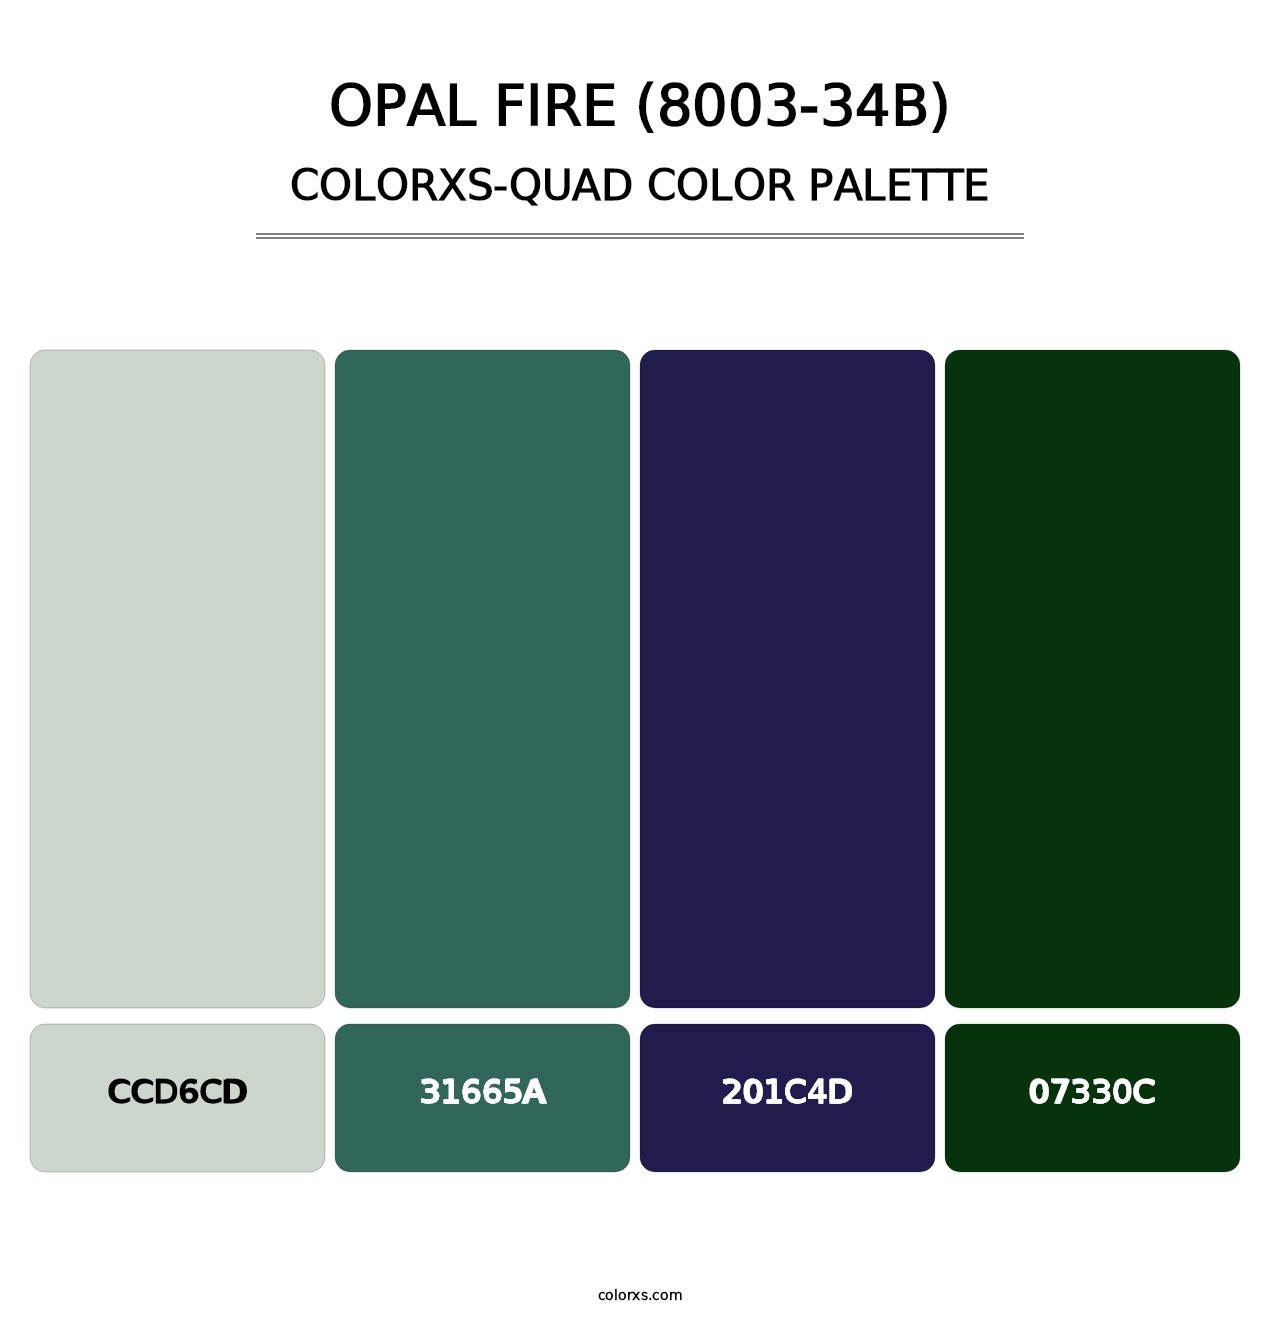 Opal Fire (8003-34B) - Colorxs Quad Palette